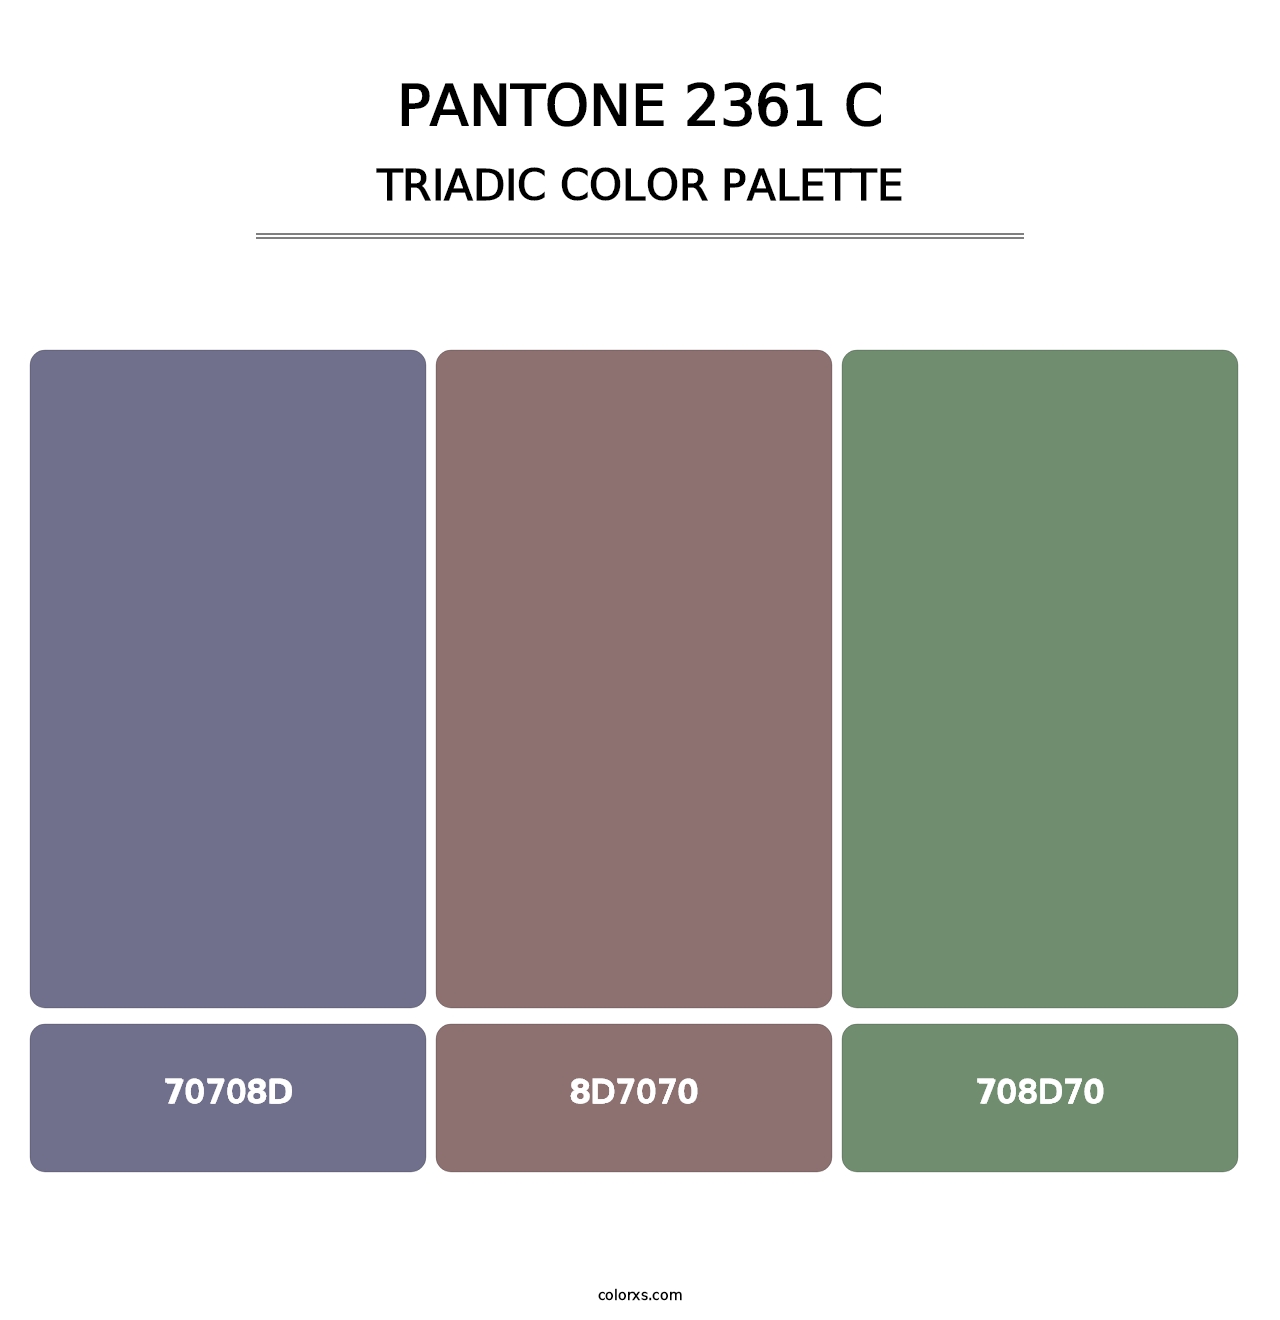 PANTONE 2361 C - Triadic Color Palette